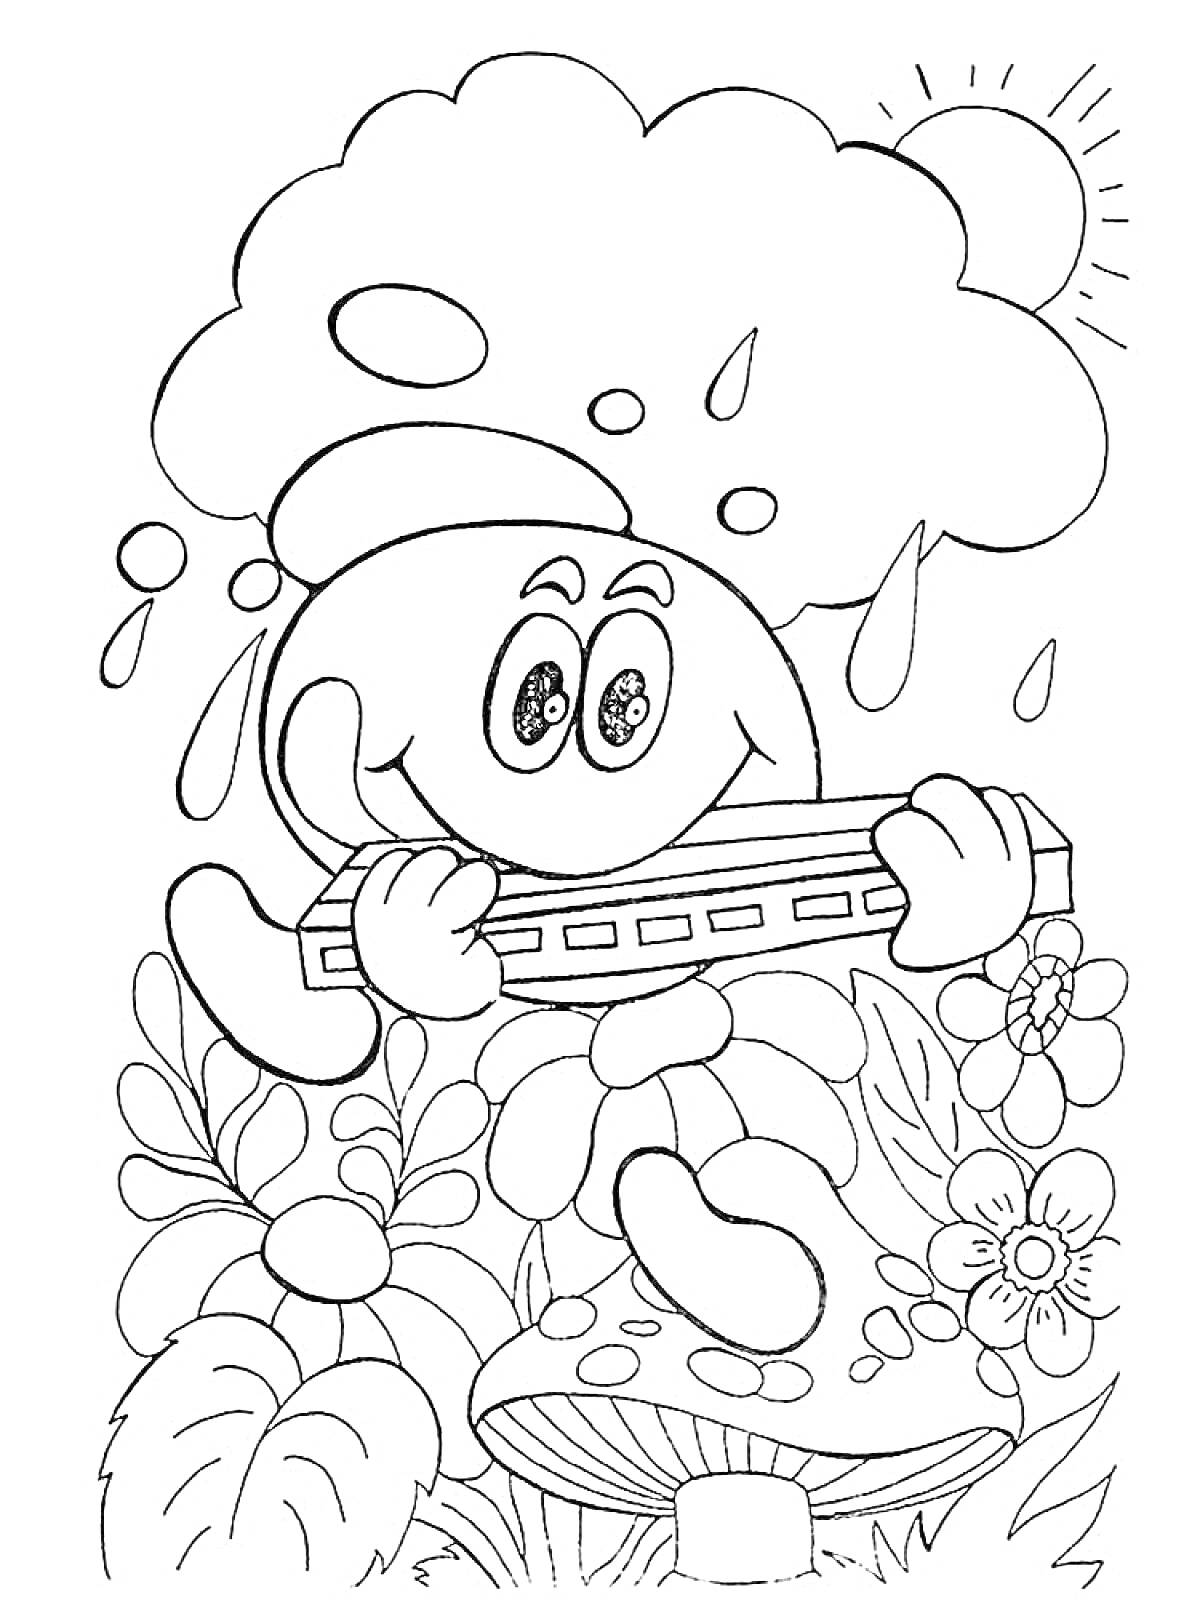 Раскраска Капитошка играет на губной гармошке под дождиком, окружённый цветами и грибом